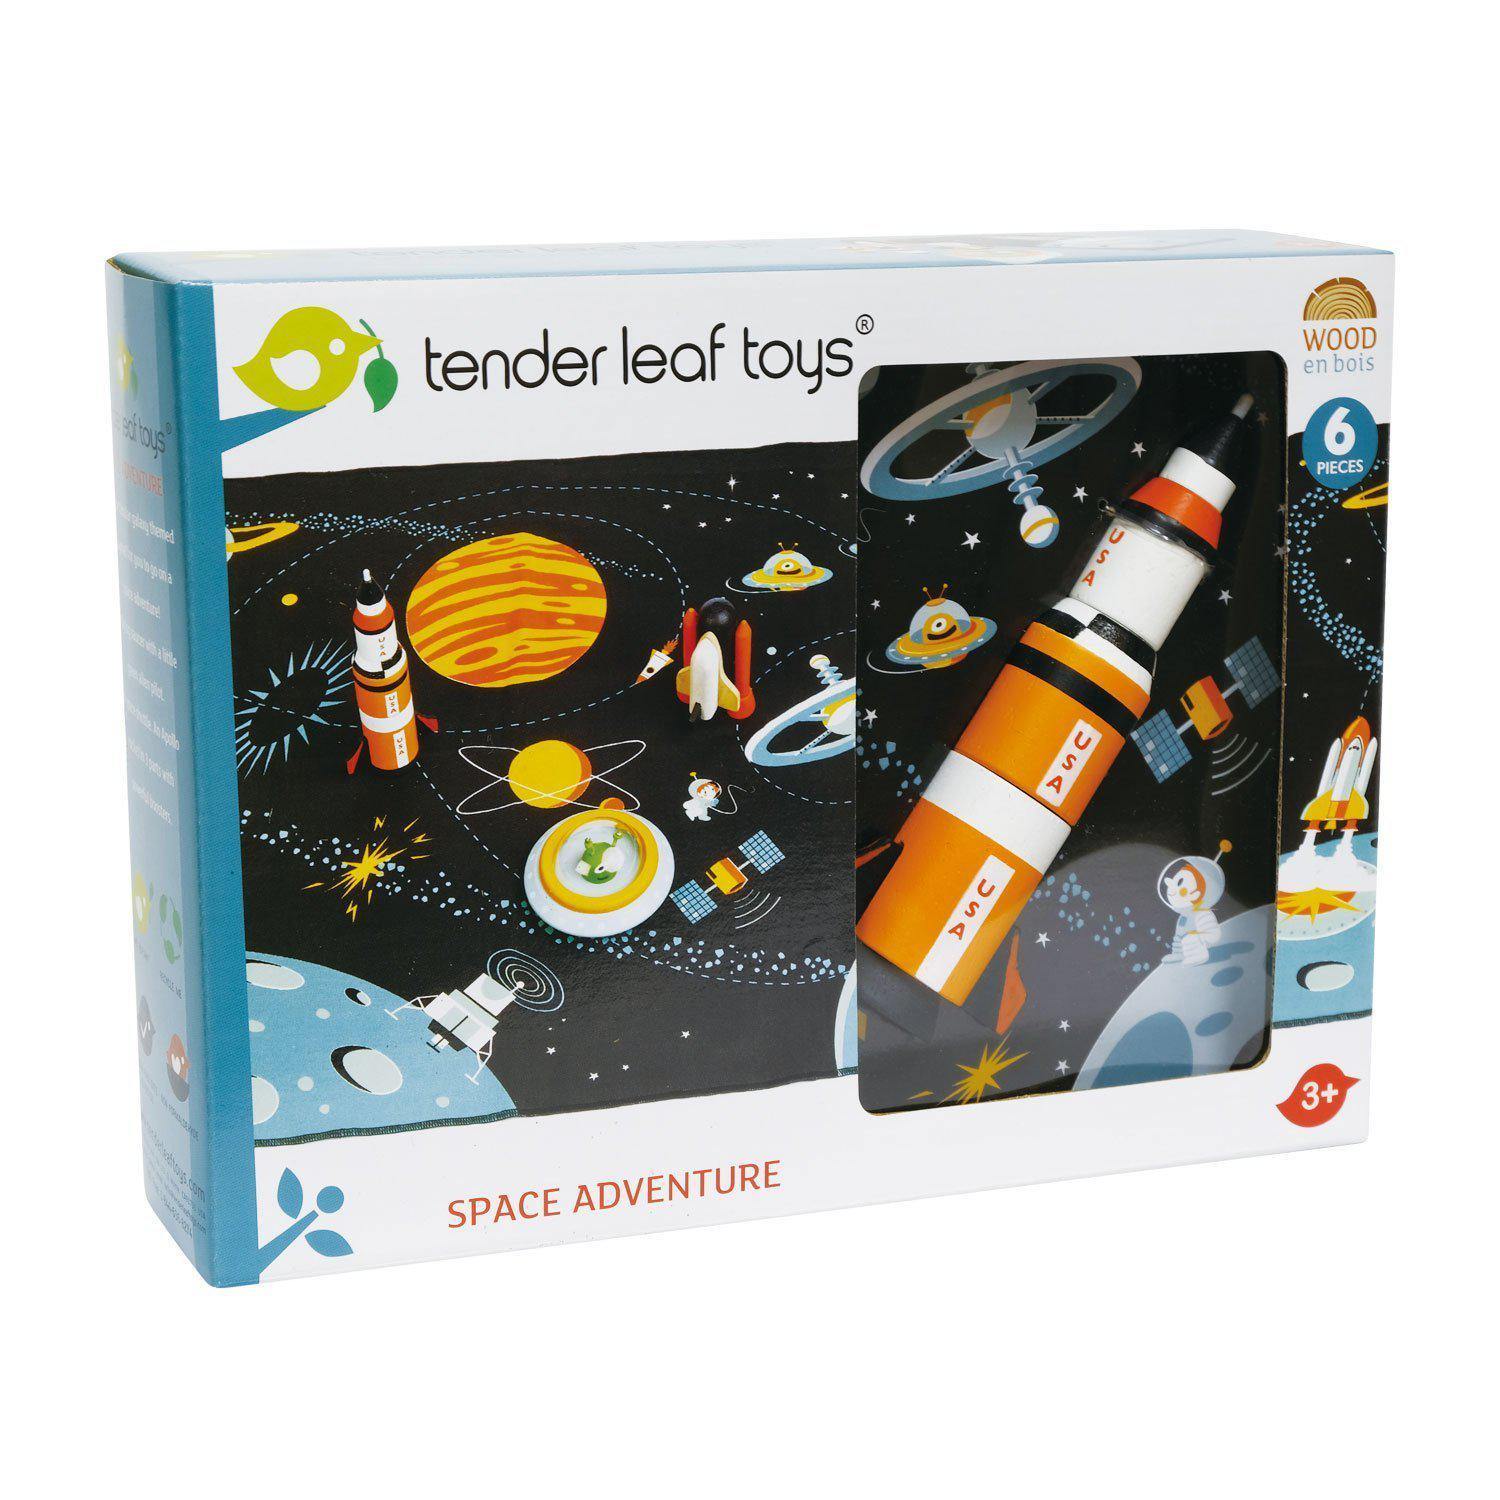 Kalandozás az űrben, prémium minőségű fából - Space Adventure - 6 darab - Tender Leaf Toys-Tender Leaf Toys-1-Játszma.ro - A maradandó élmények boltja